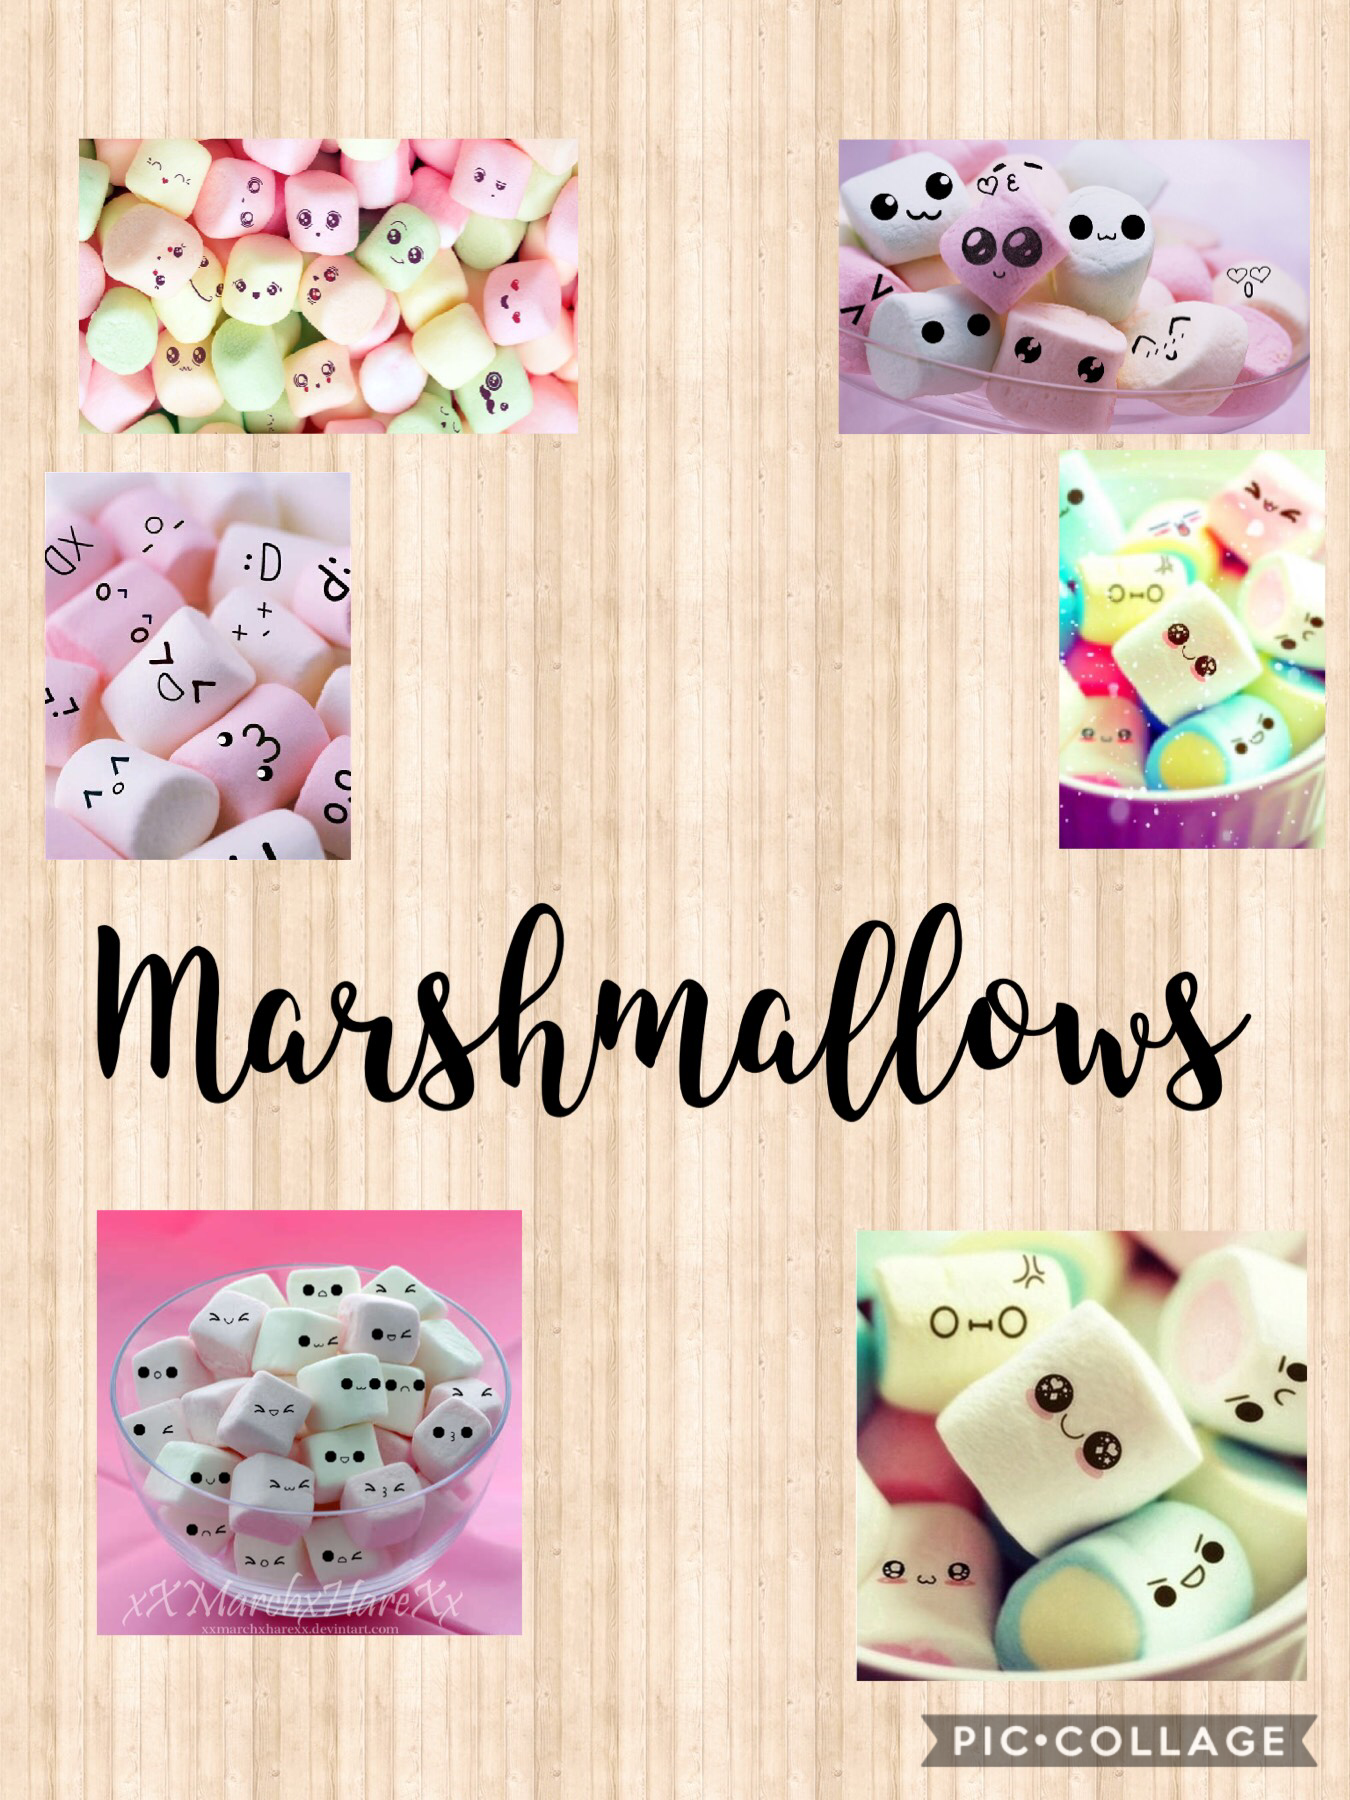 Who else loves marshmallows 